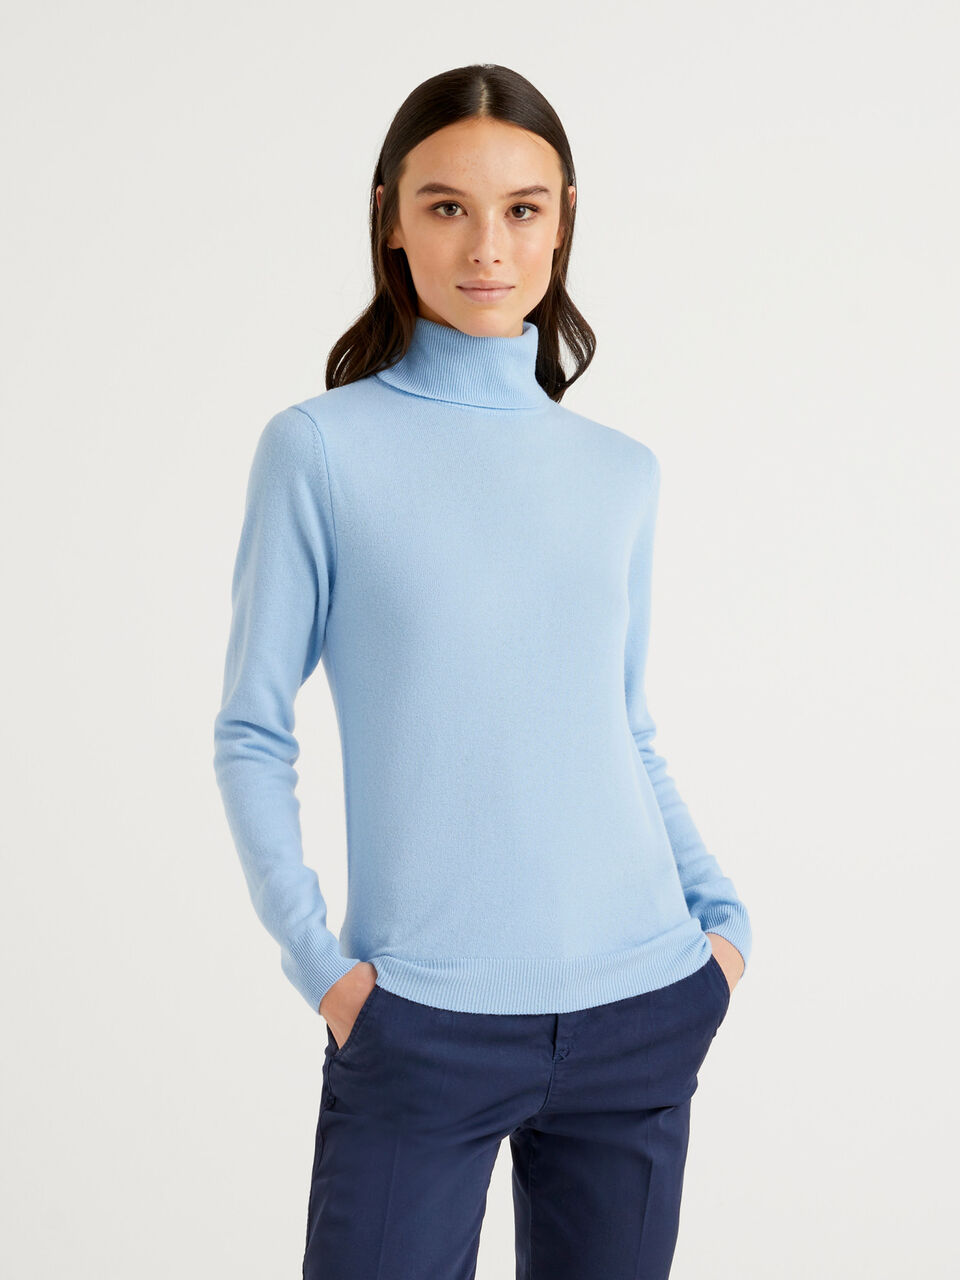 Sky blue turtleneck sweater in pure Merino wool - Light Blue | Benetton